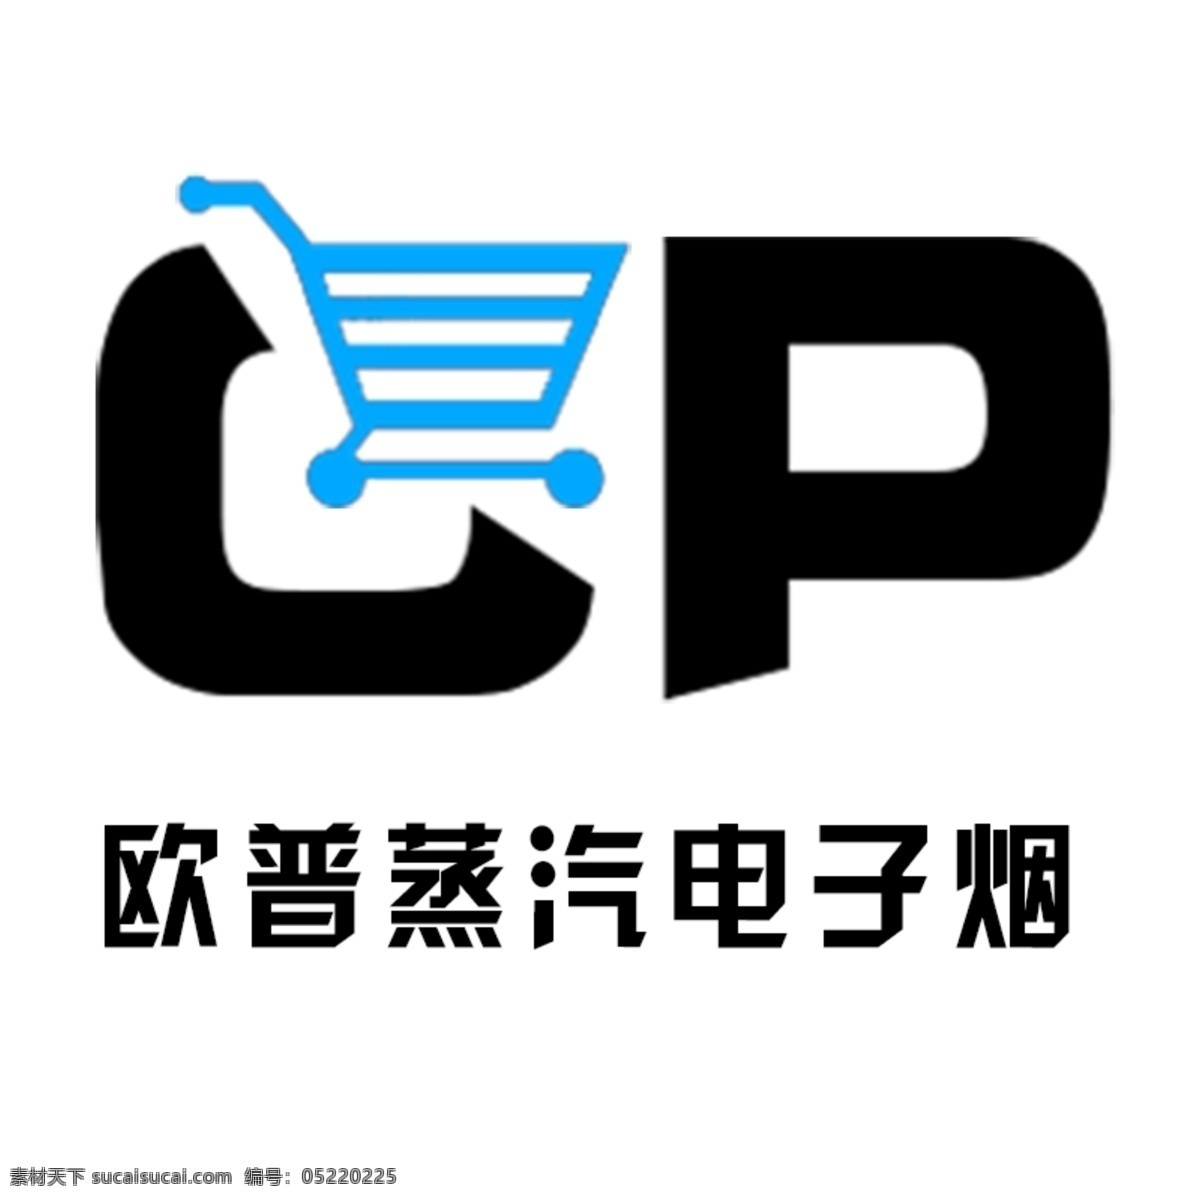 欧普 蒸汽 电子 烟 蒸汽电子烟 标志设计 logo设计 电子烟 标识